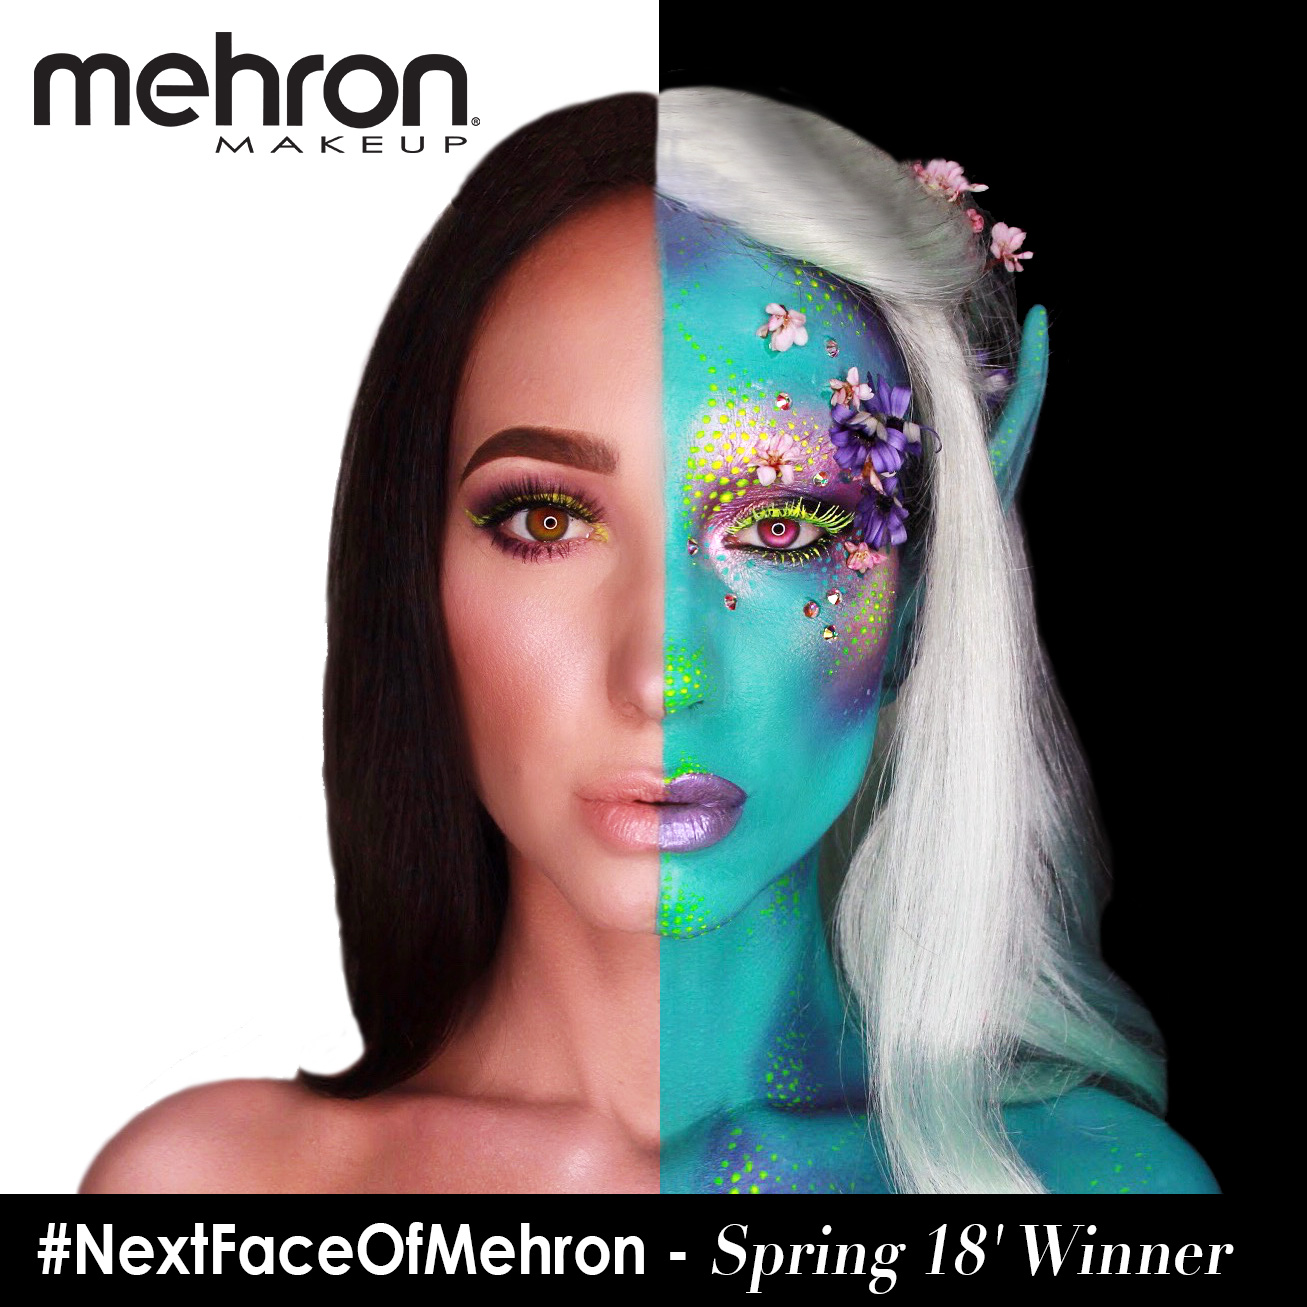 Fun Makeup To Kick Off 2018 - Mehron, Inc.